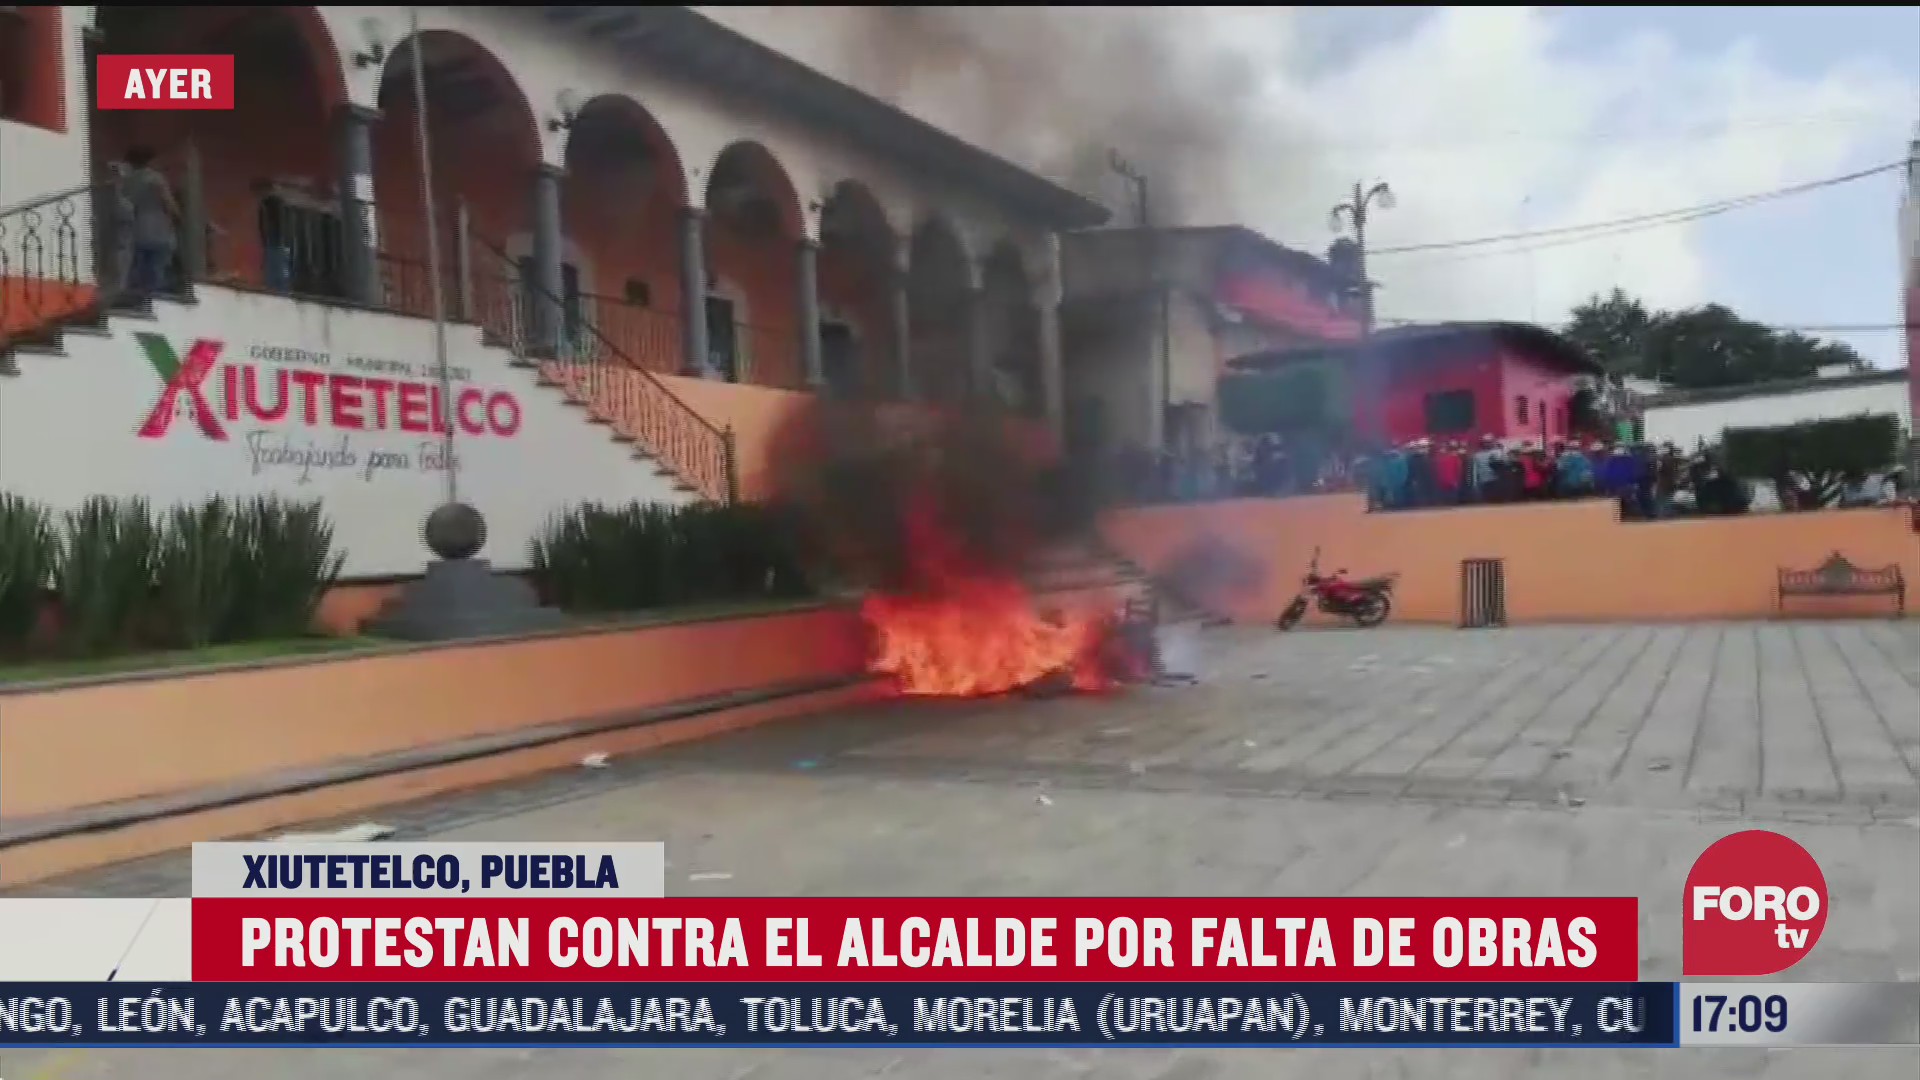 queman ayuntamiento de xiutetelco en protesta por falta de obras